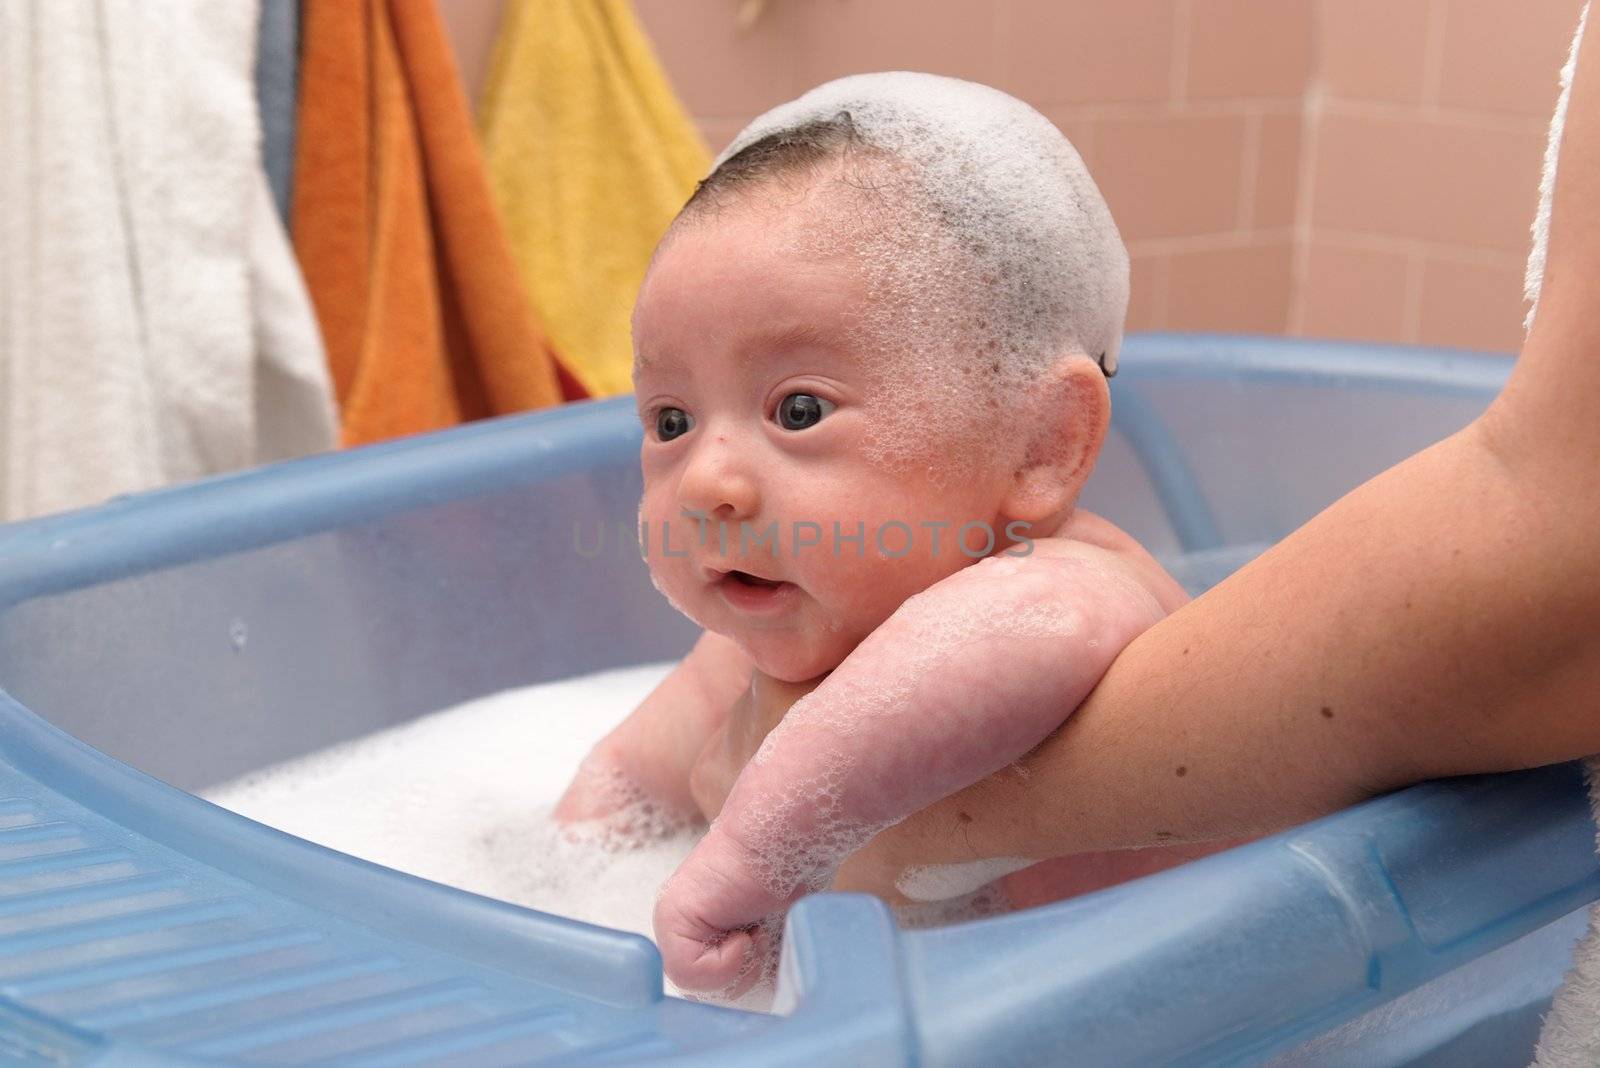 Cute baby in a bathtub with foam cap on his head